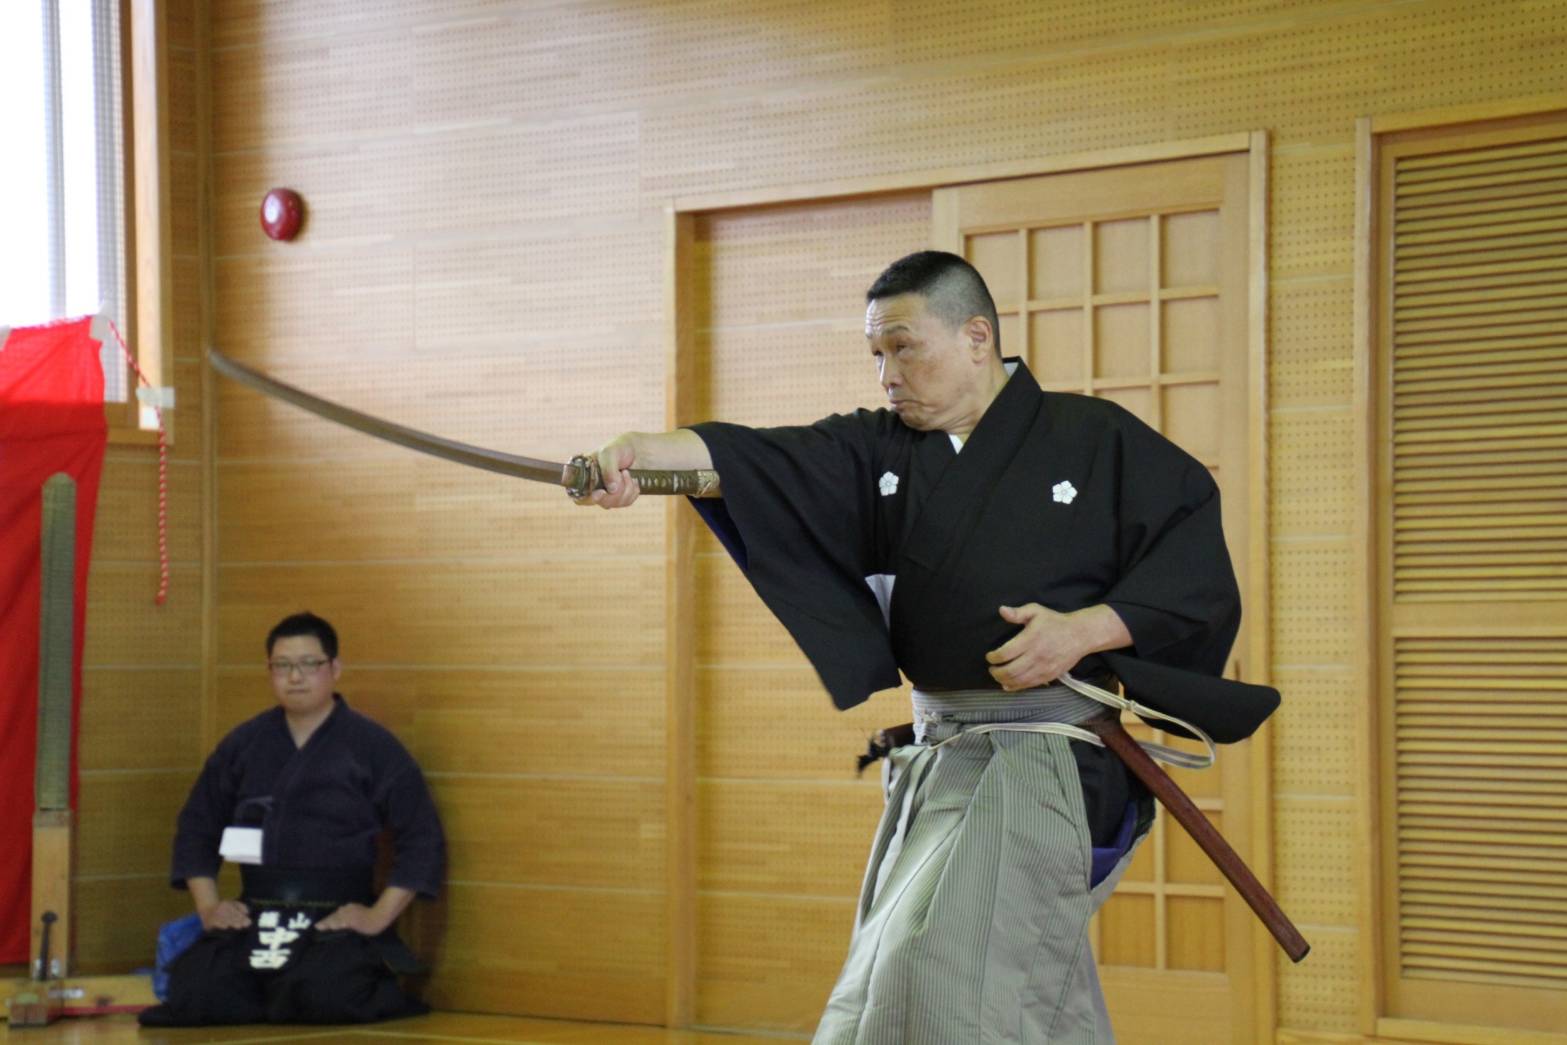 黒い袴を着た男性が、右手に持った剣を前に突き出している写真